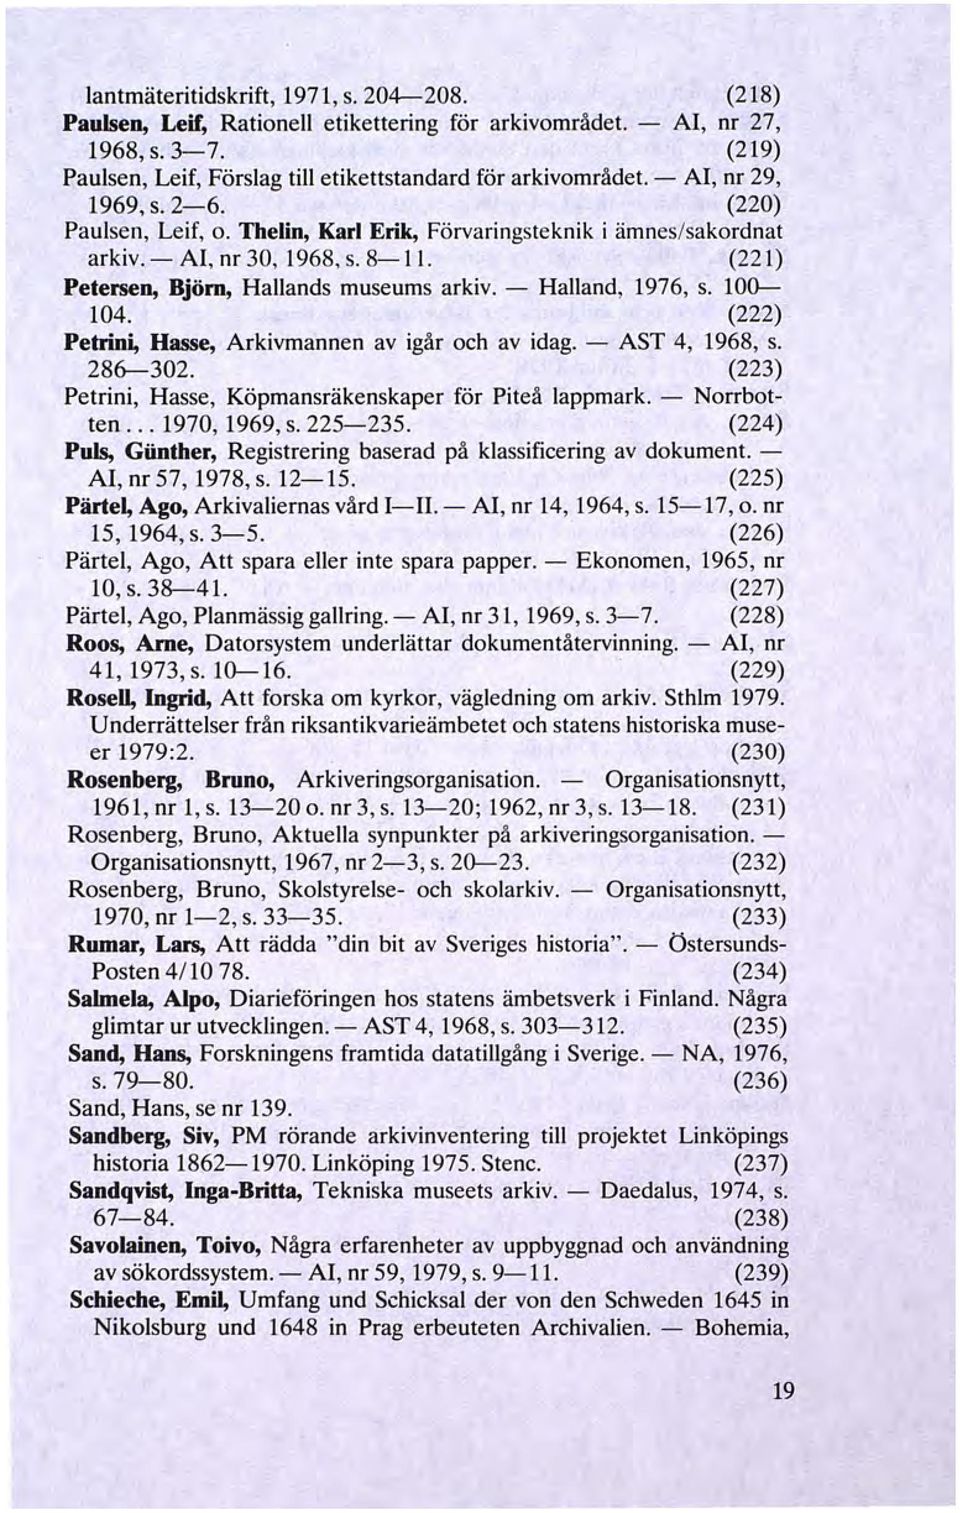 8-11. (221) Petersen, Björn, Hallands museums arkiv. - Halland, 1976, s. 100--- 104. (222) Petrini, Hasse, Arkivmannen av igår och av idag. - AST 4, 1968, s. 286-302.